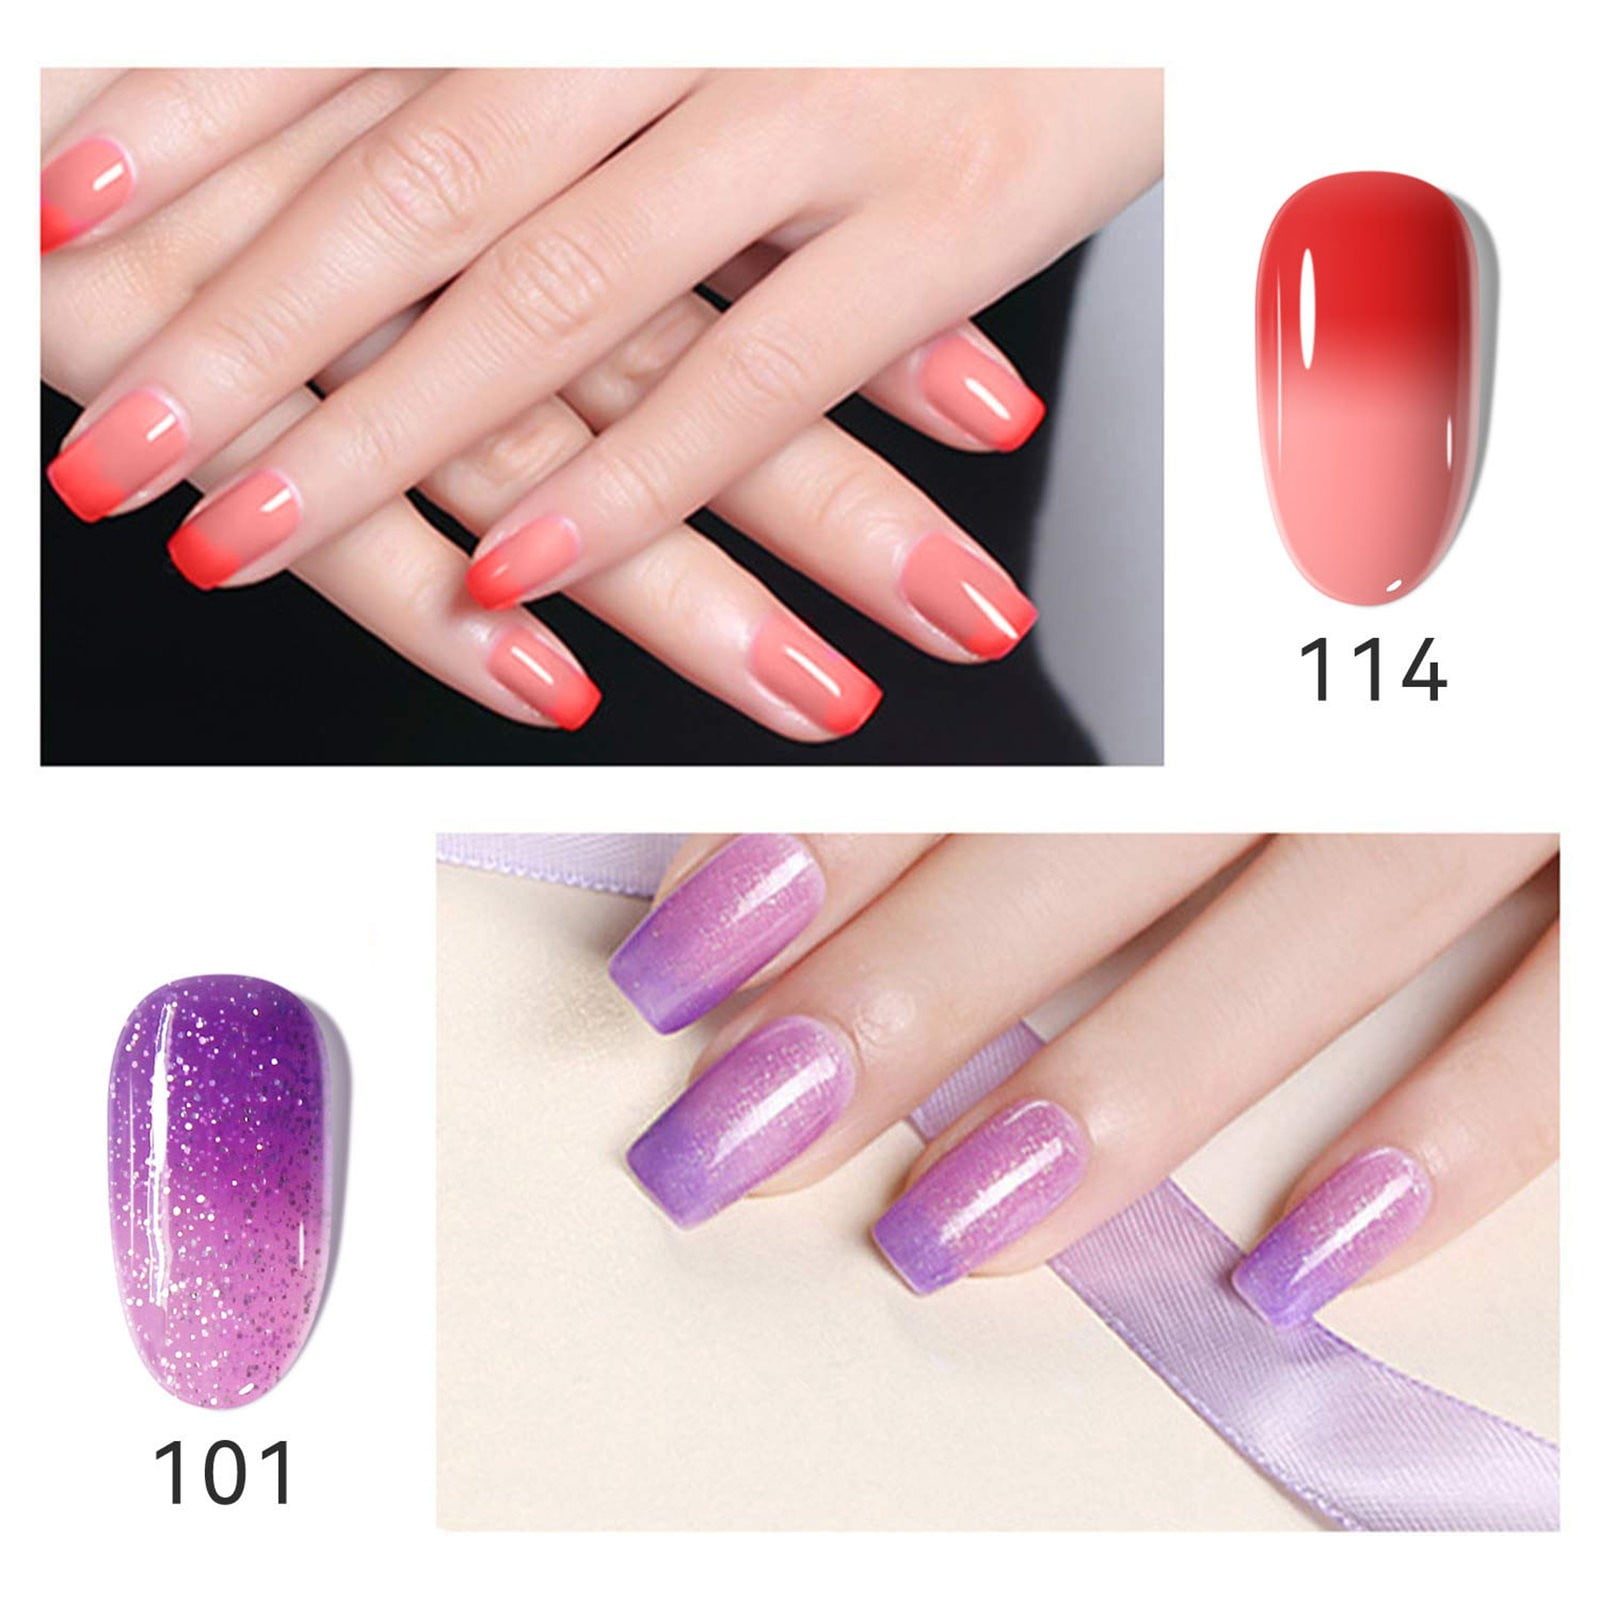 The Best Non-Toxic Nail Polishes | Feet nails, Toe nail color, Summer toe  nails